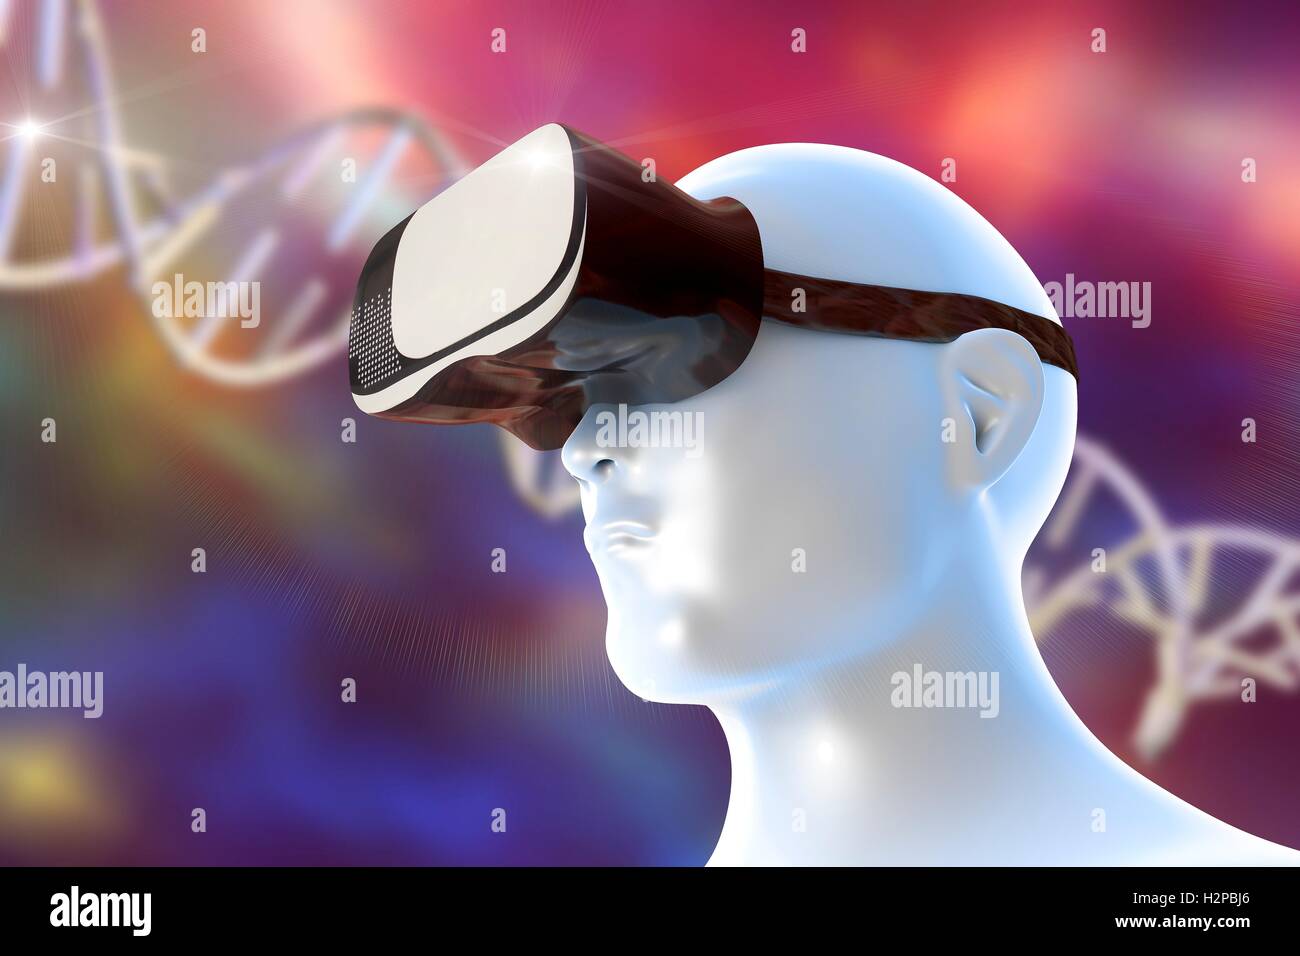 Menschlichen Kopf trägt eine virtual-Reality-Kopfhörer. Konzeptionelle Darstellung Perspektive der virtuellen Realität in biomedizinischen Bildung und Wissenschaft. Ein Molekül der DNA (Desoxyribonukleinsäure) ist im Hintergrund. Stockfoto